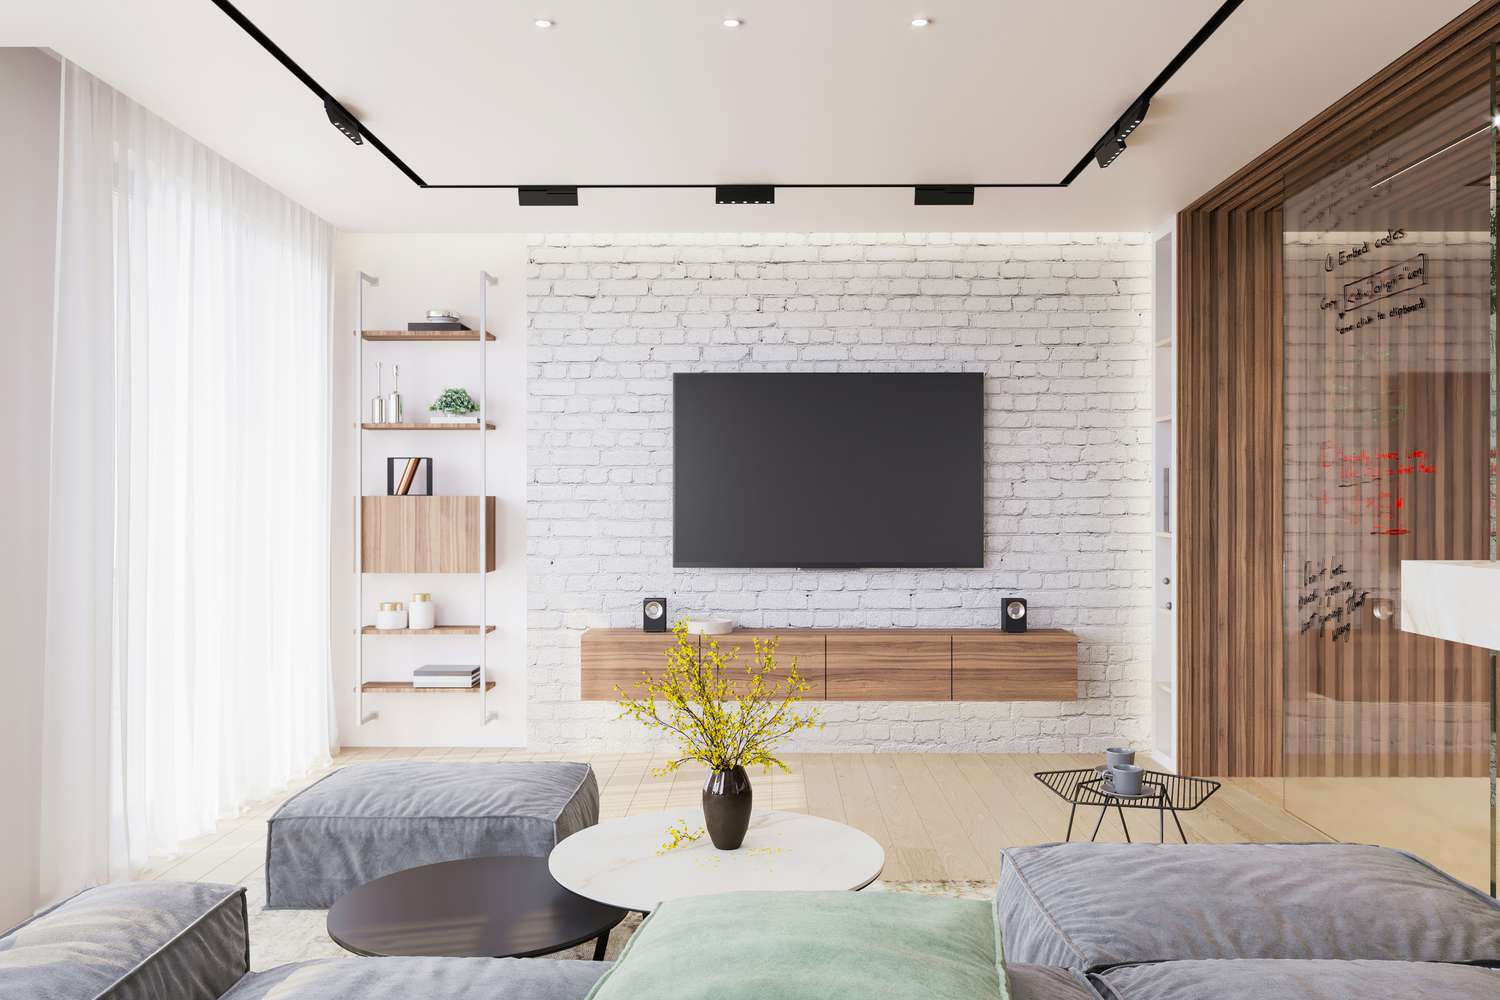 Un salón moderno con pared de ladrillo blanco y televisor montado